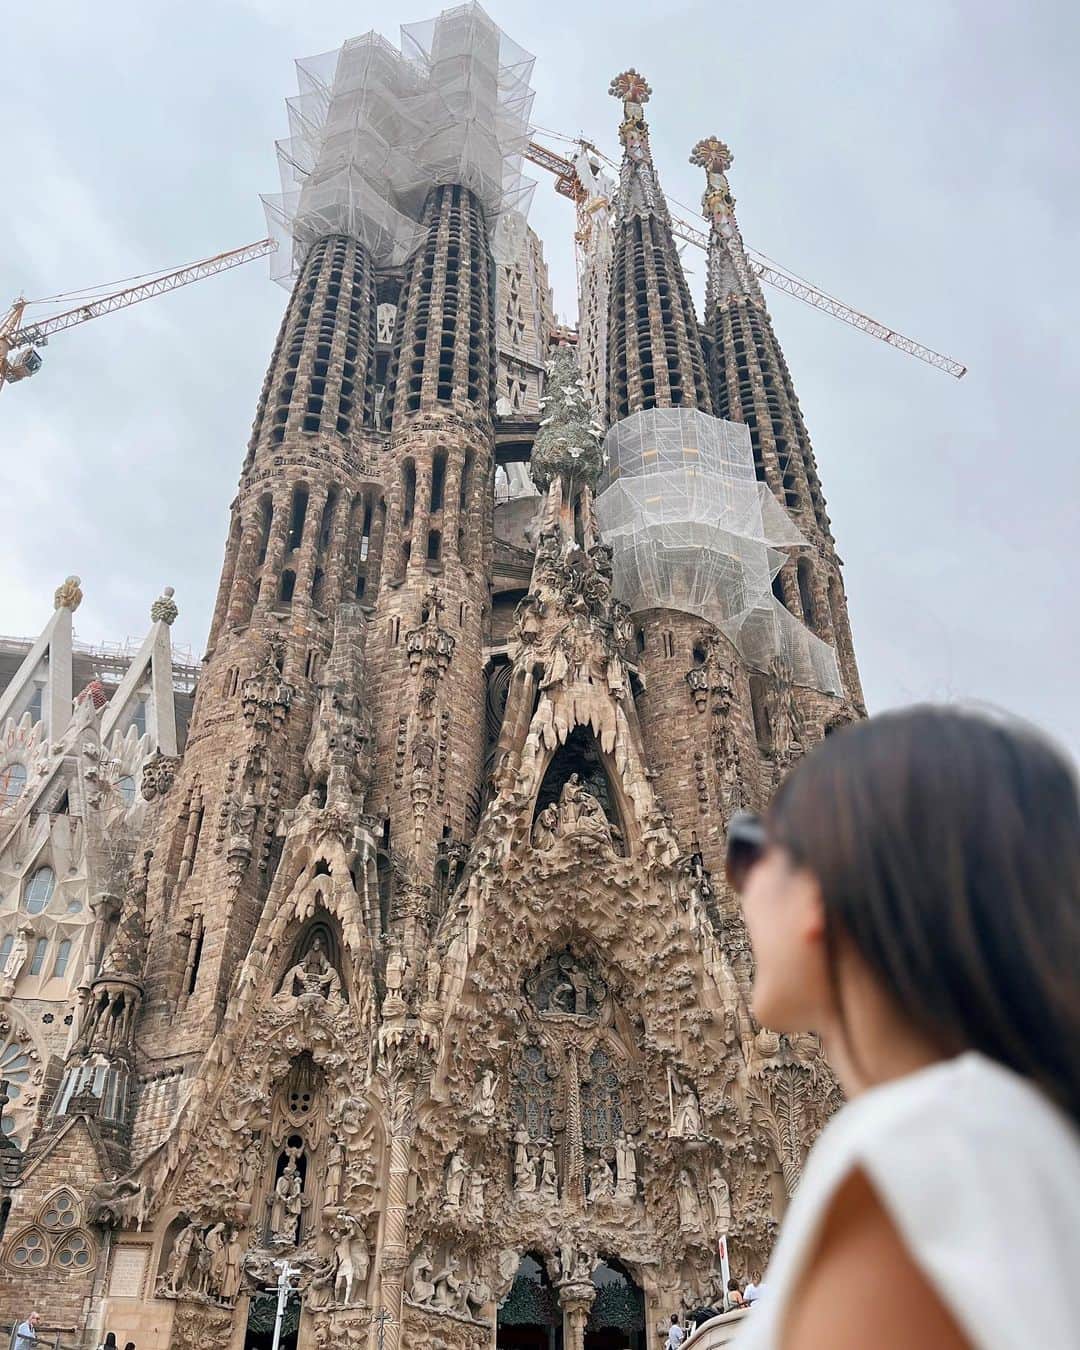 Remiのインスタグラム：「Sagrada Família, Barcelona🇪🇸 西地中海クルーズの寄港地、スペイン・バロセロナでサグラダ・ファミリアへ。 母とのスペイン旅行以来、14年ぶり2回目の訪問。  これぞ百聞は一見にしかずの壮大なガウディ建築✨ 完成まであと150年はかかると言われ生きているうちに完成形を見ることはないと思っていた未完の世界遺産。 なんと技術の進歩と寄付金により工期が大幅に短縮されて、3年後の2026年に完成する予定なんだそう！ ある意味貴重な建設中のサグラダ・ファミリアに🙏🏼  ------------ 📍#Barcelona, #Spain 🏰 #SagradaFamília  ⚓️ @msccruisesofficial  🛳  #mscdivina  👨‍👩‍👧‍👦 @hh.channel2023  🗓 2023.10.13-24  #サグラダファミリア #クルーズ旅  #MSCクルーズ #ヨーロッパクルーズ #地中海クルーズ #子連れクルーズ #子連れ旅行 #子連れ世界一周 #世界一周中 #世界一周旅行 #worldroundtrip #sagradafamilia #barcelona #msc #mediterranean #mediterraneancruise #msccruises #cruise #cruiselife #familycruise #remi_world2023」